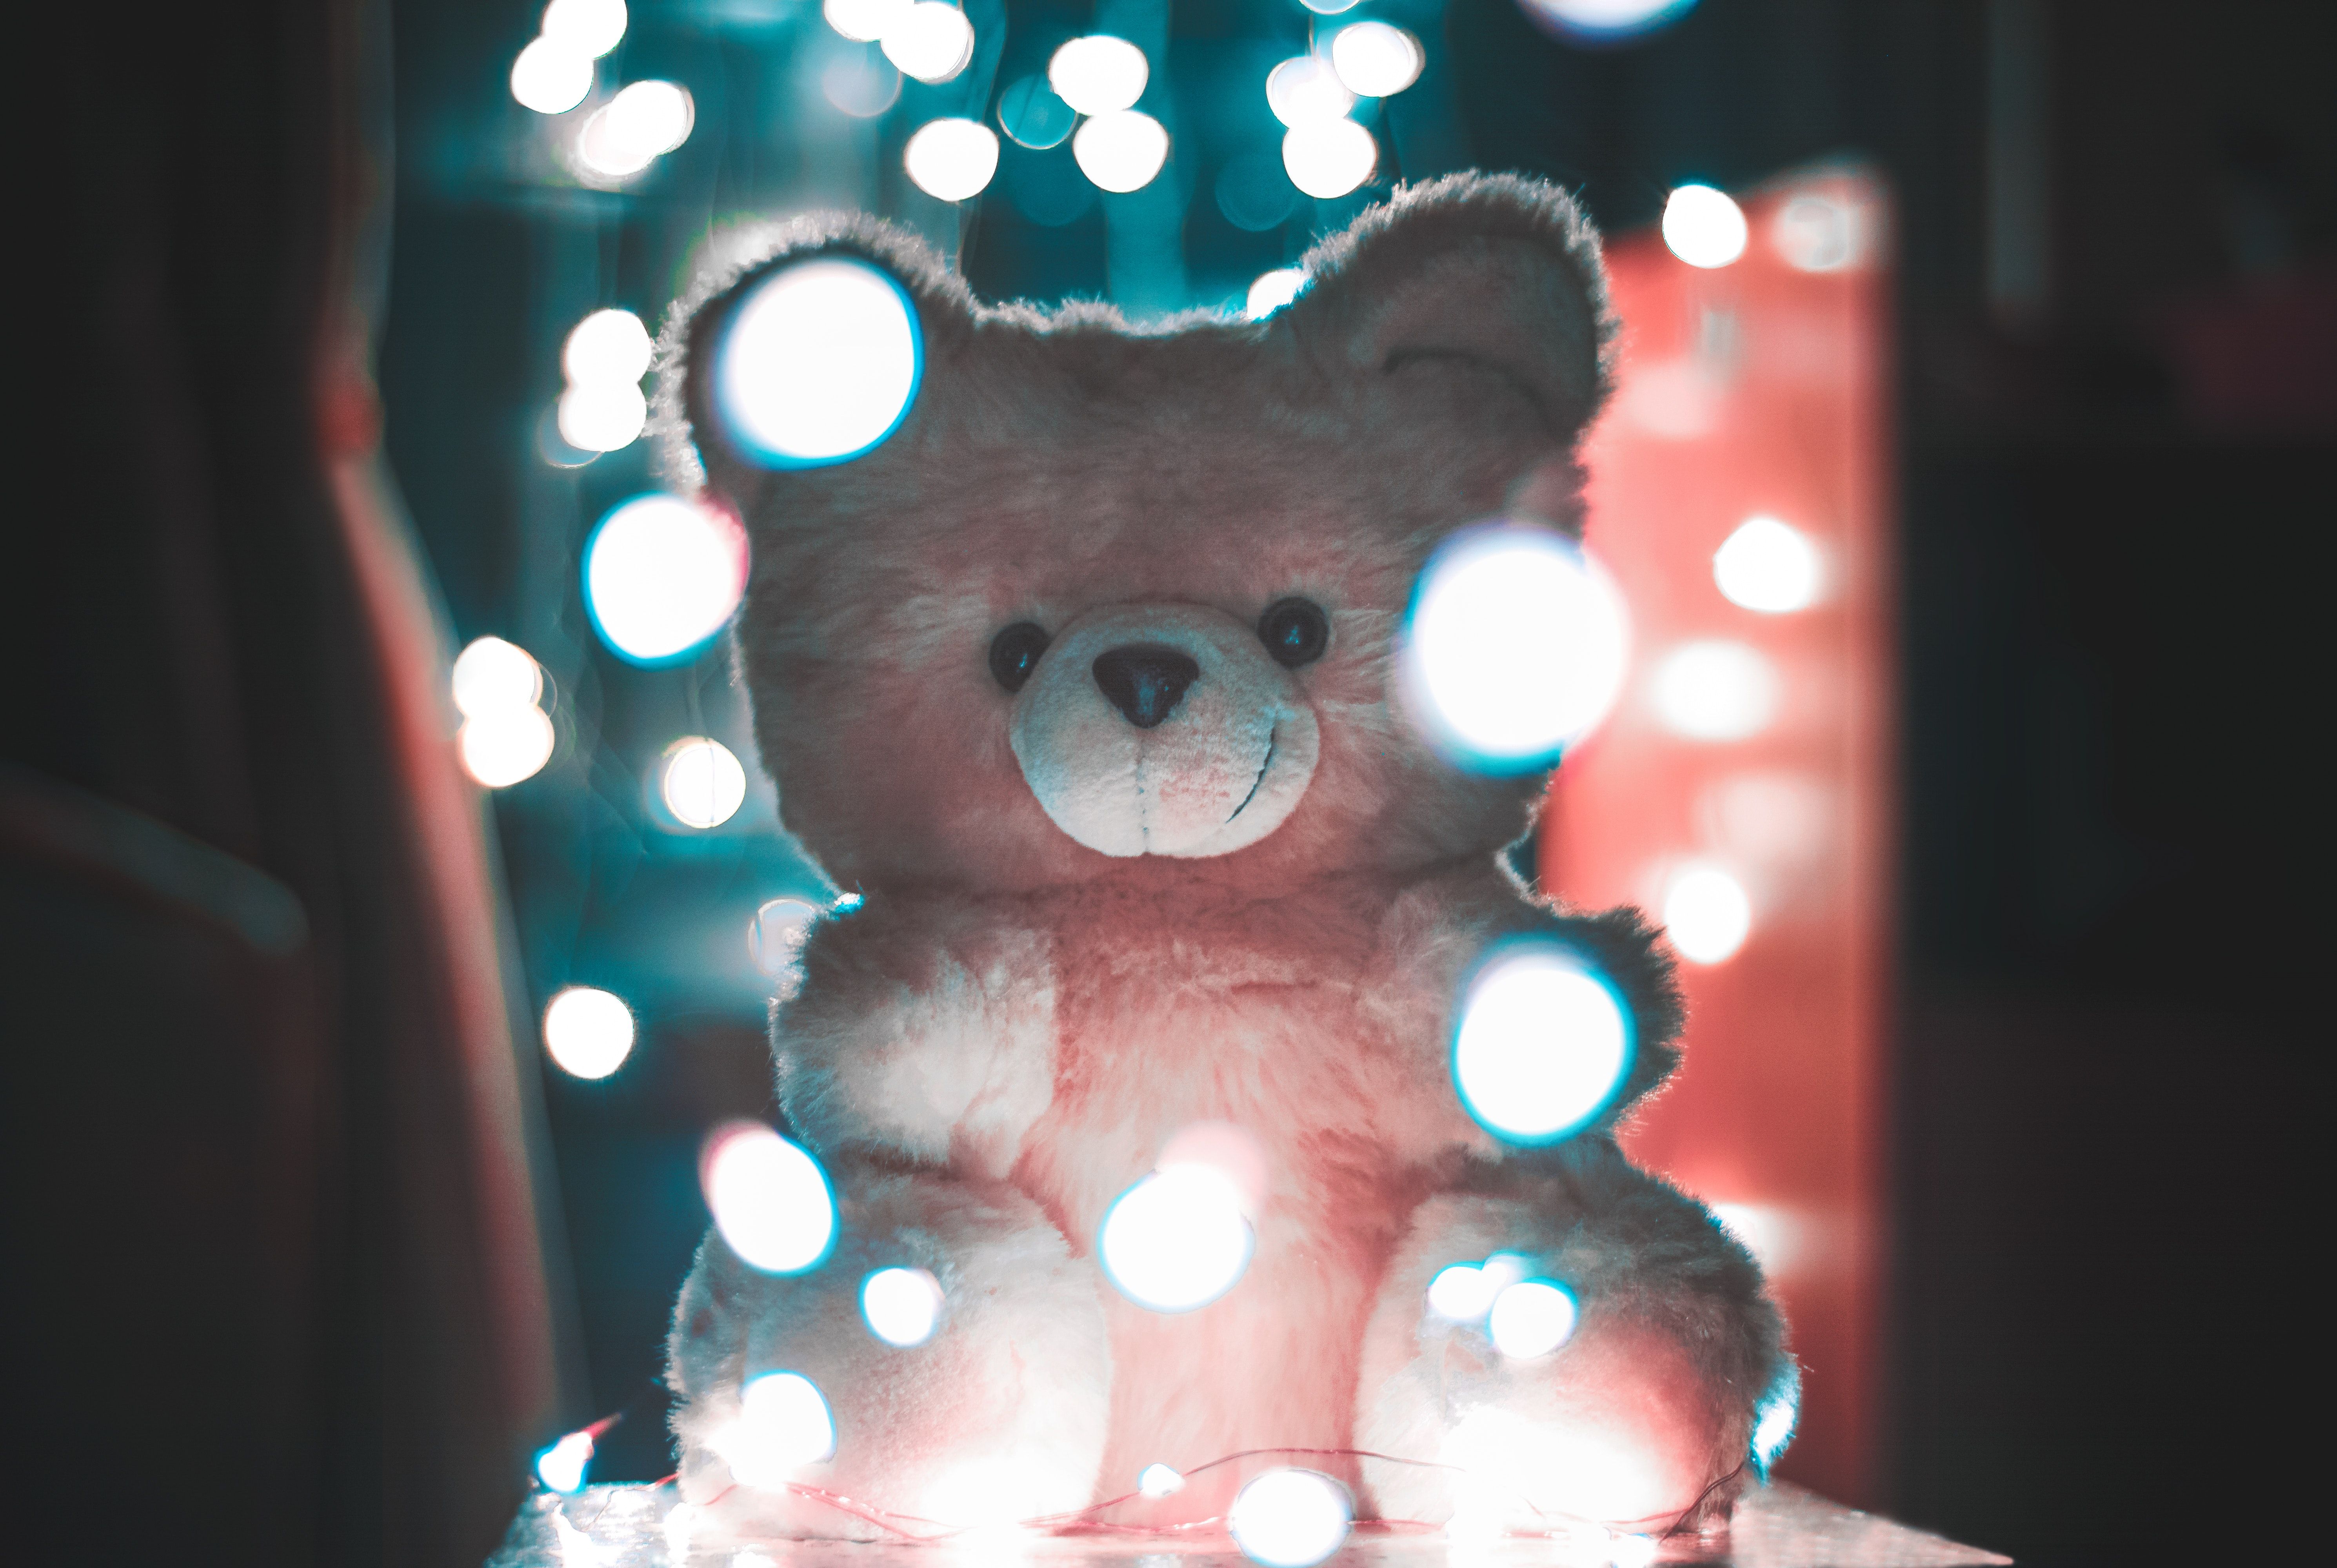 Cute Teddy Bears Wallpaper For Mobile